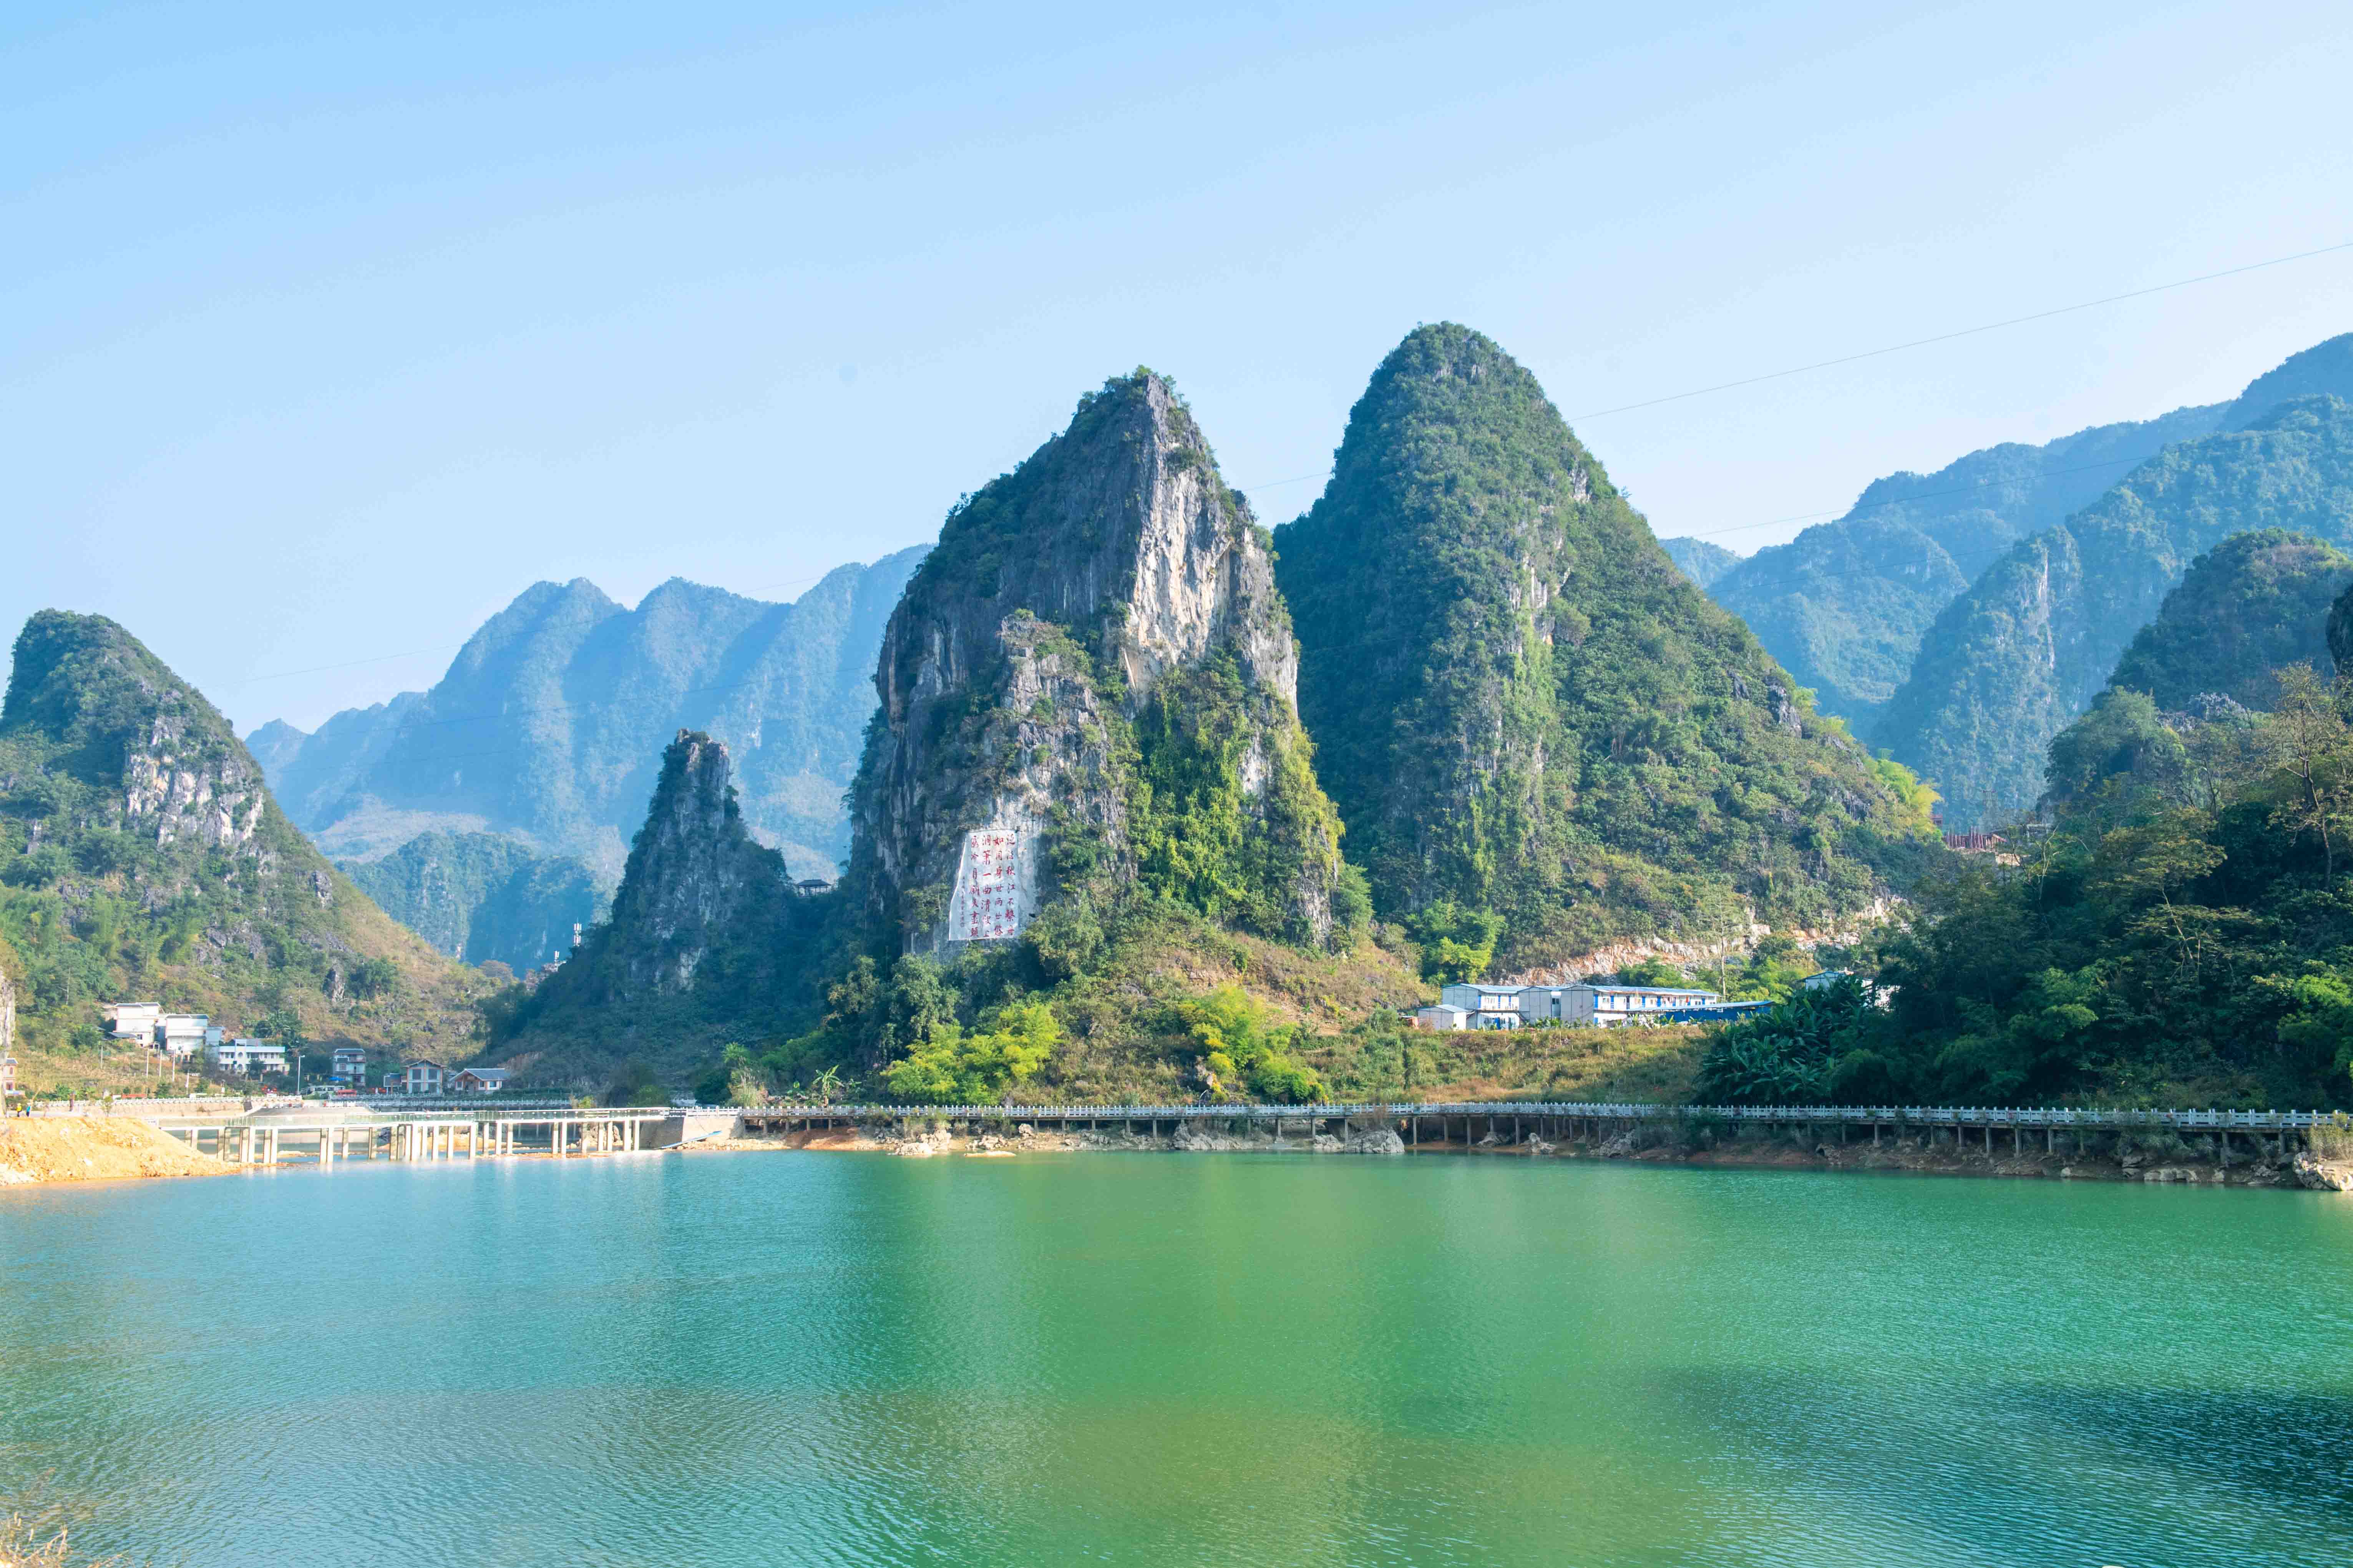 原创广西最美的湖泊原来不在桂林,风景超秀丽还不收门票,你去过吗?